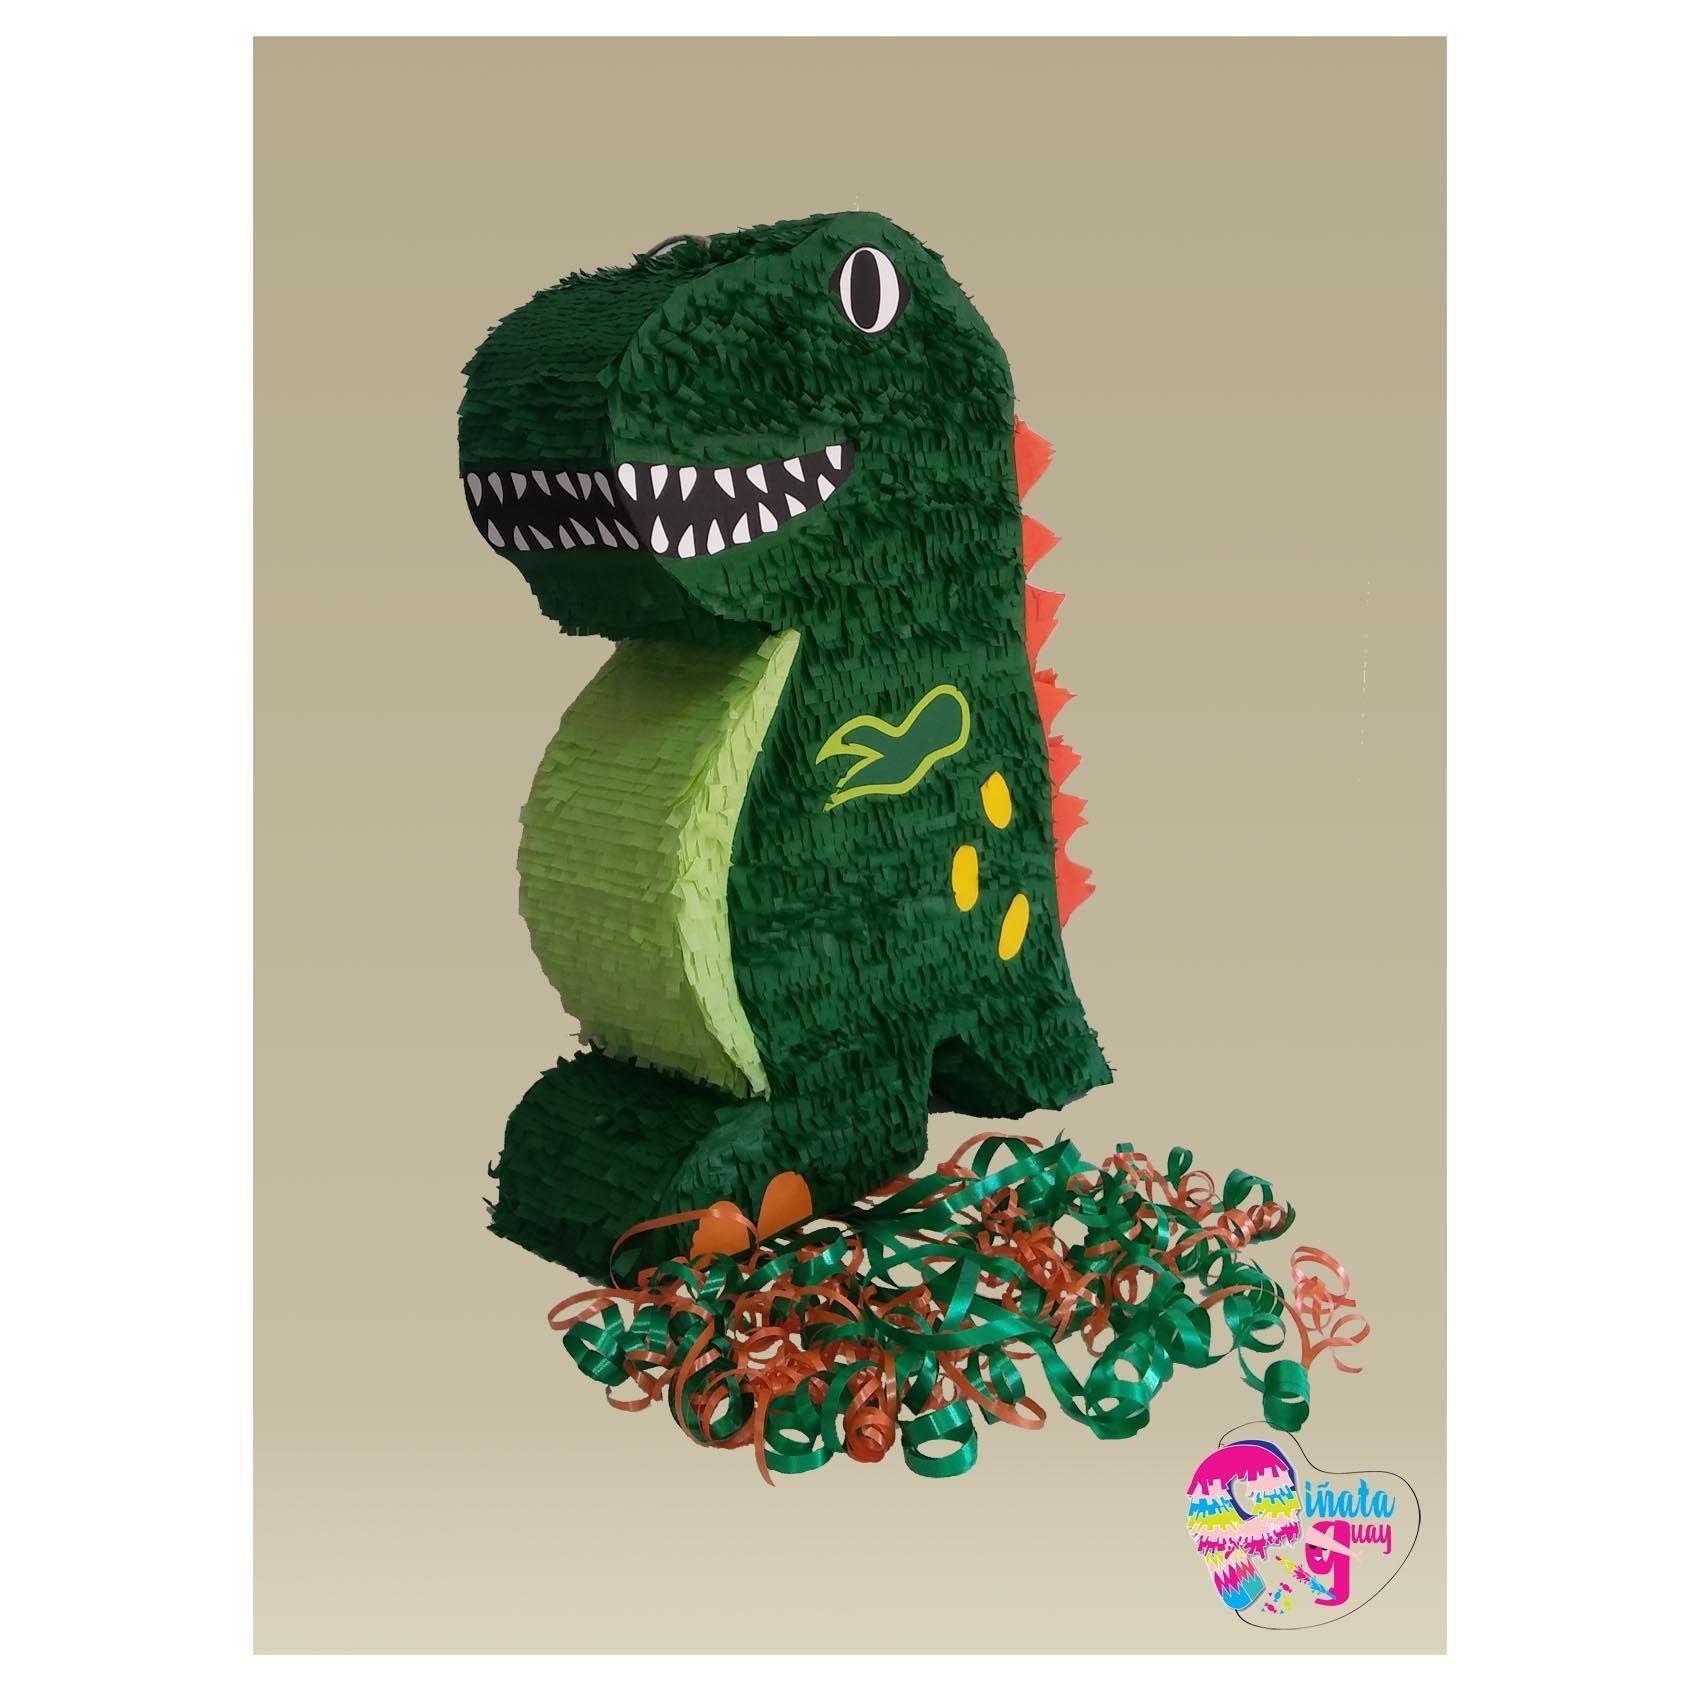 Piñata de dinosaurio - Piñata Guay